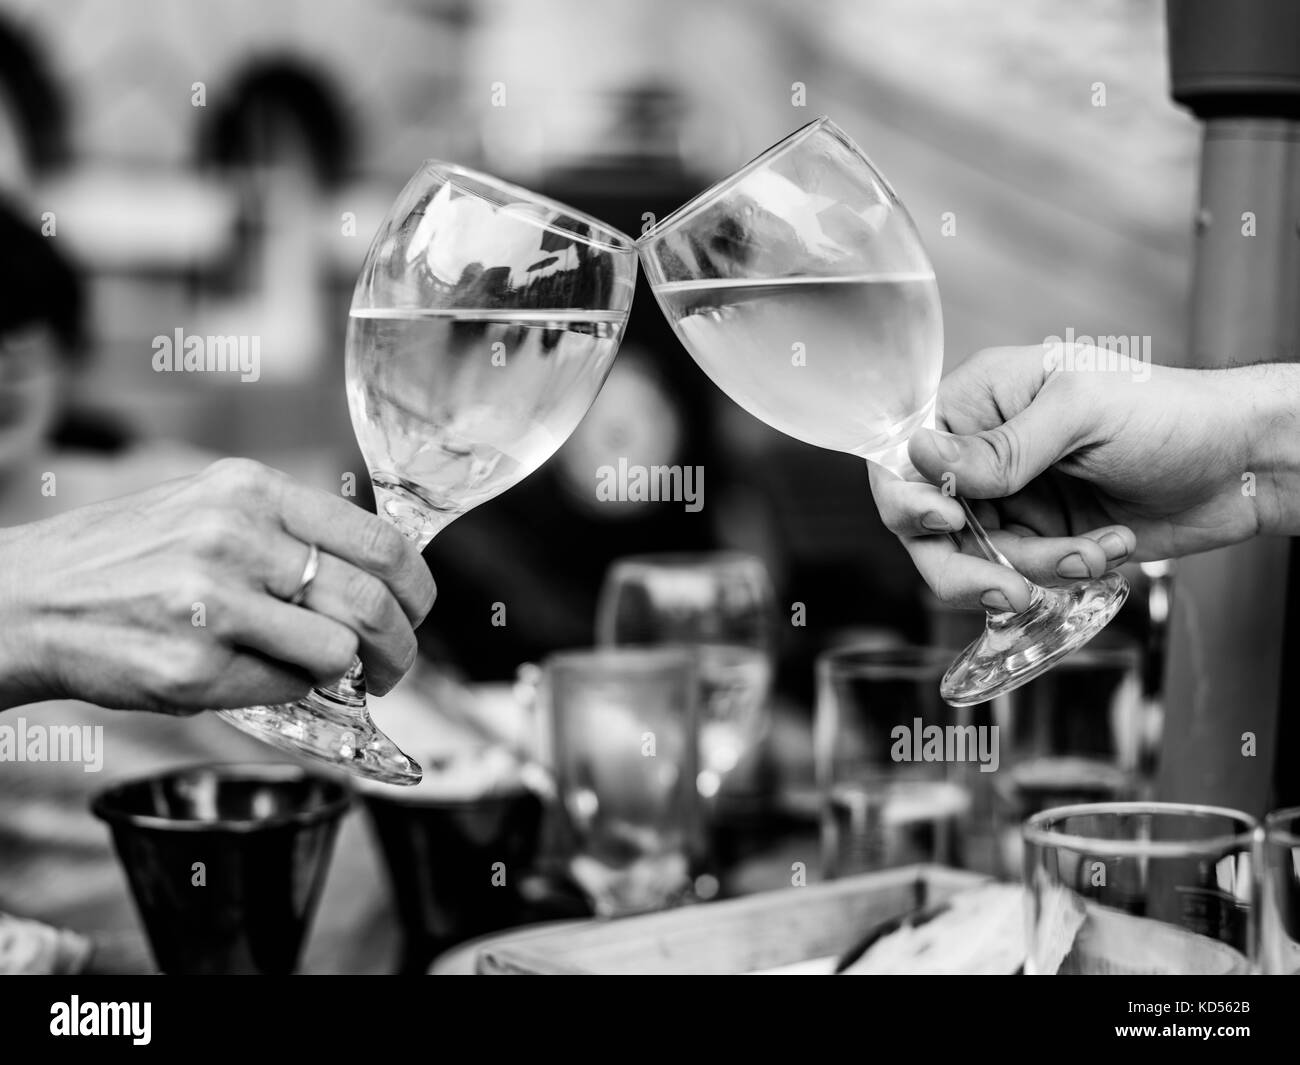 Bianco e nero immagine monocromatica di celebrare il successo con il rilievo di due bicchieri di vino bianco in una tabella in un esterno o impostazione ourdoors Foto Stock